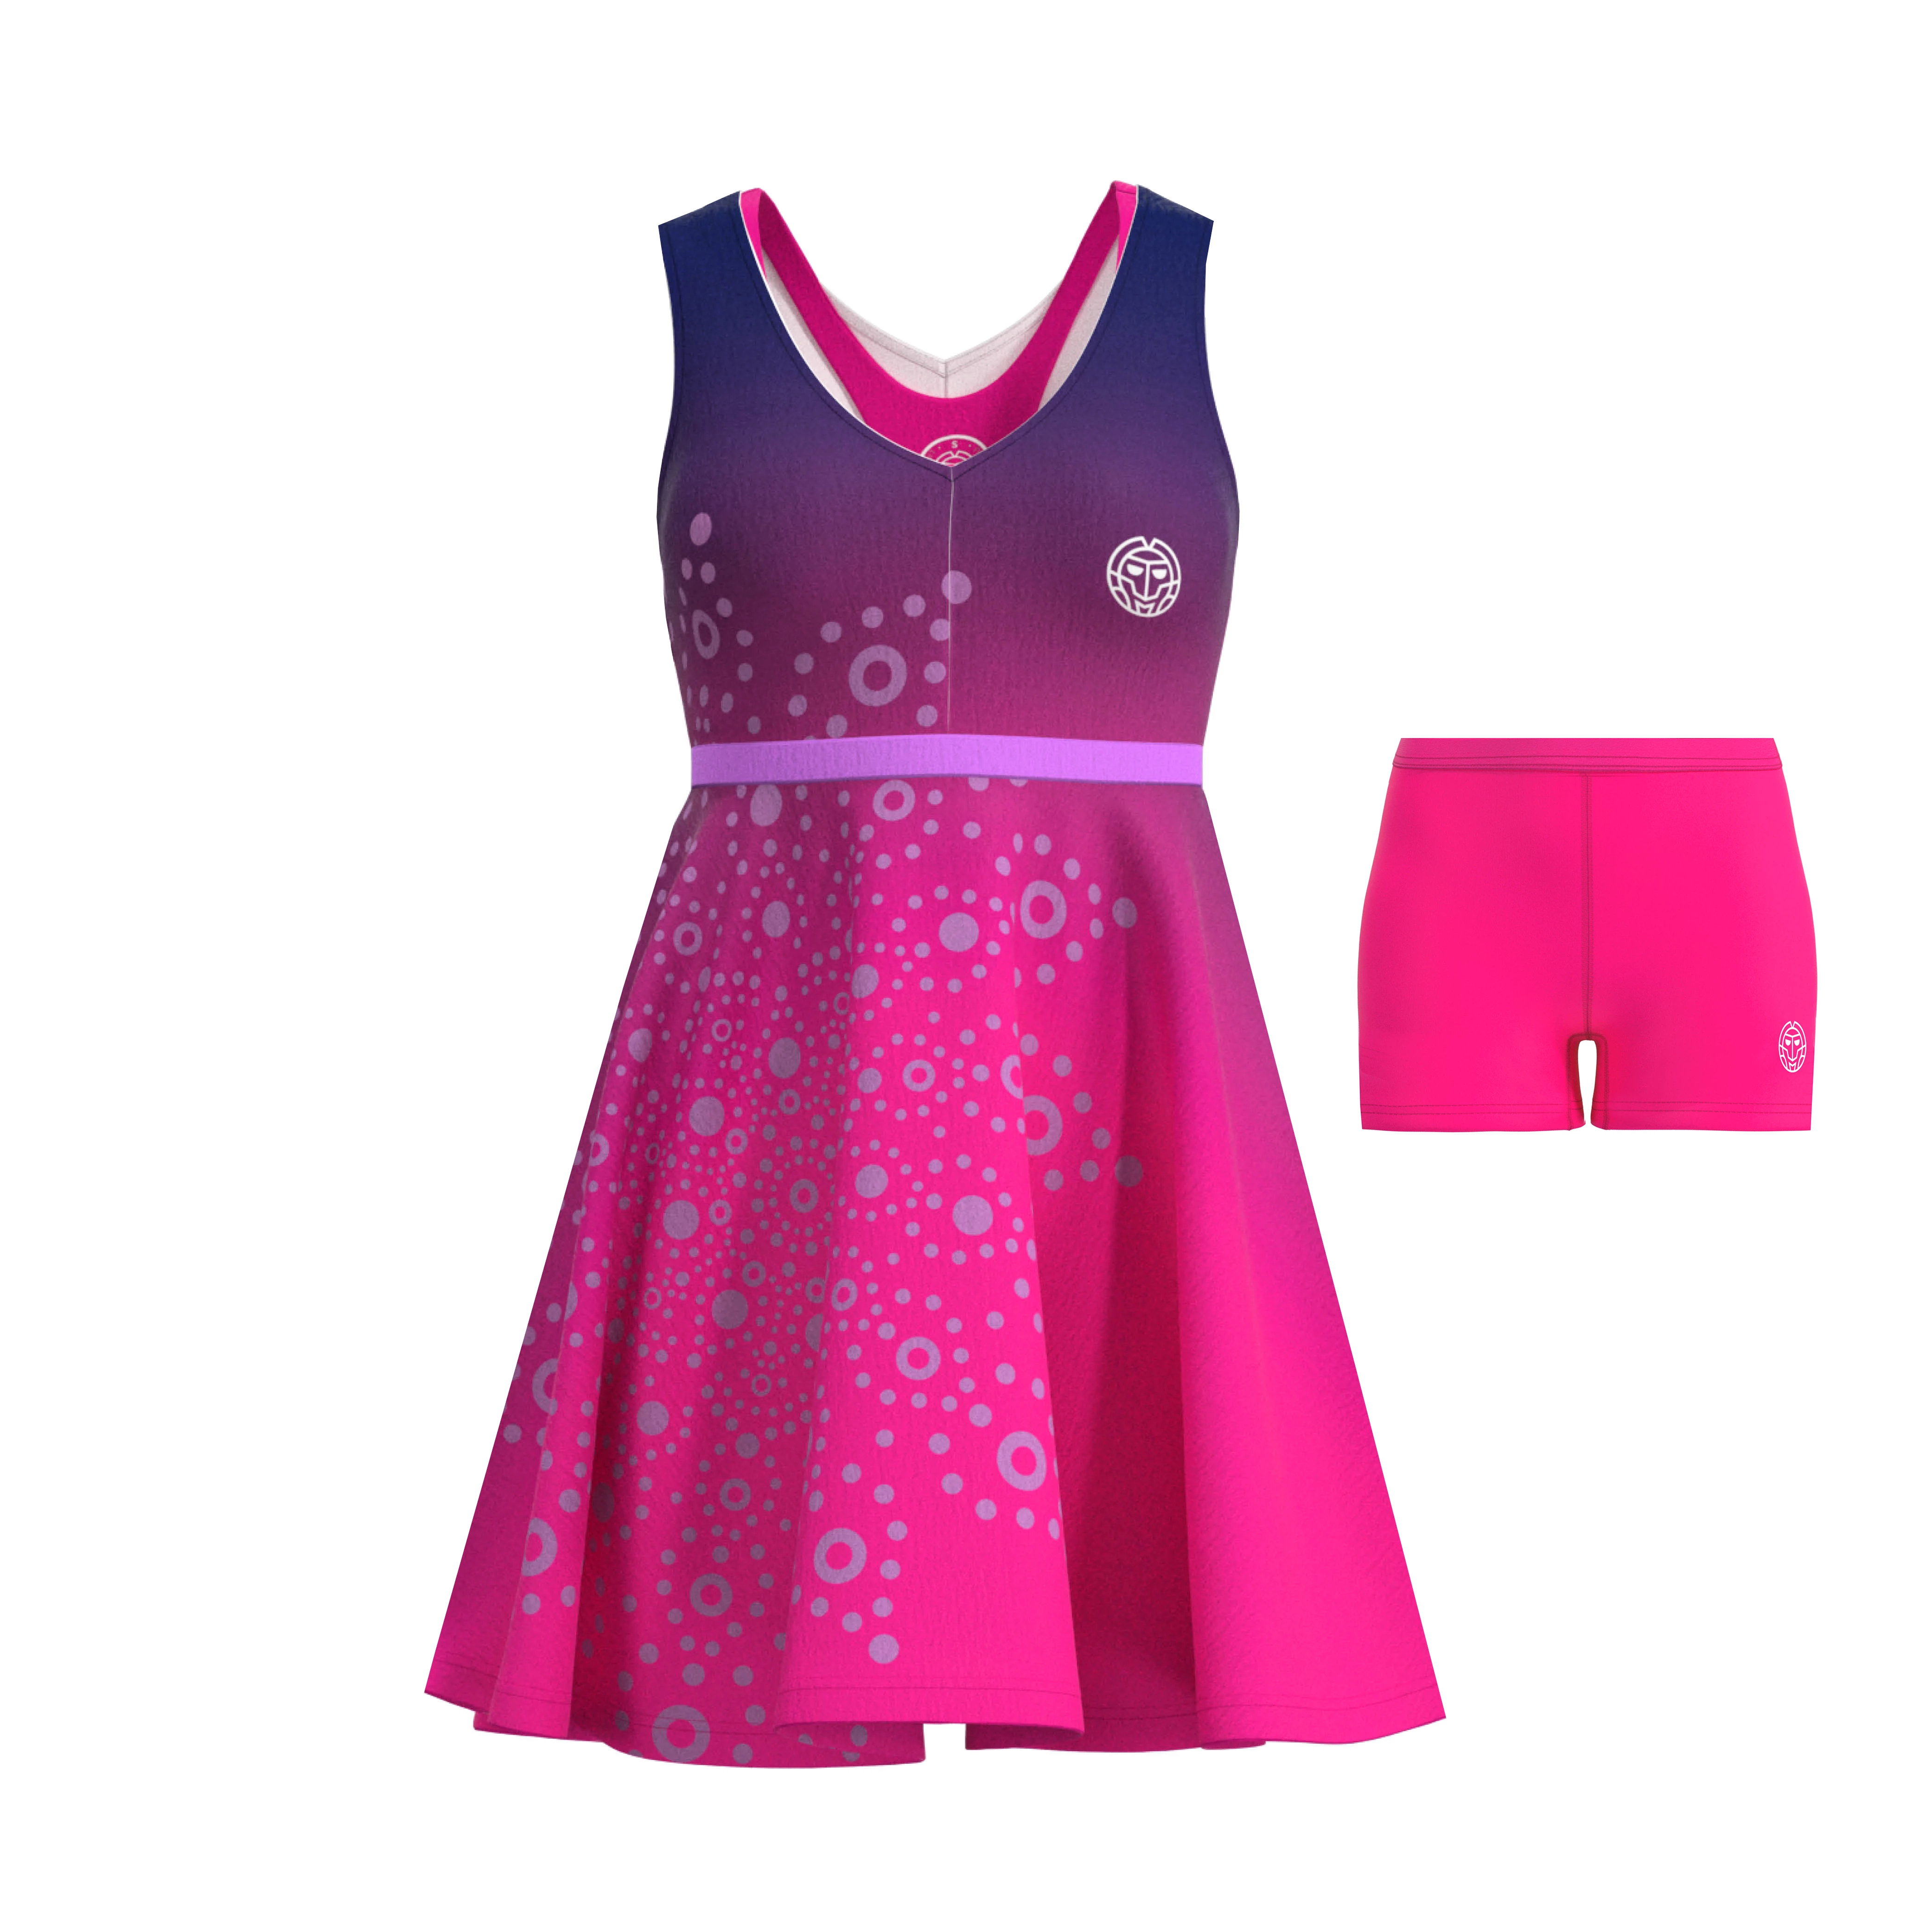 Women's dress BIDI BADU Colortwist 3in1 Dress Pink/Dark Blue M